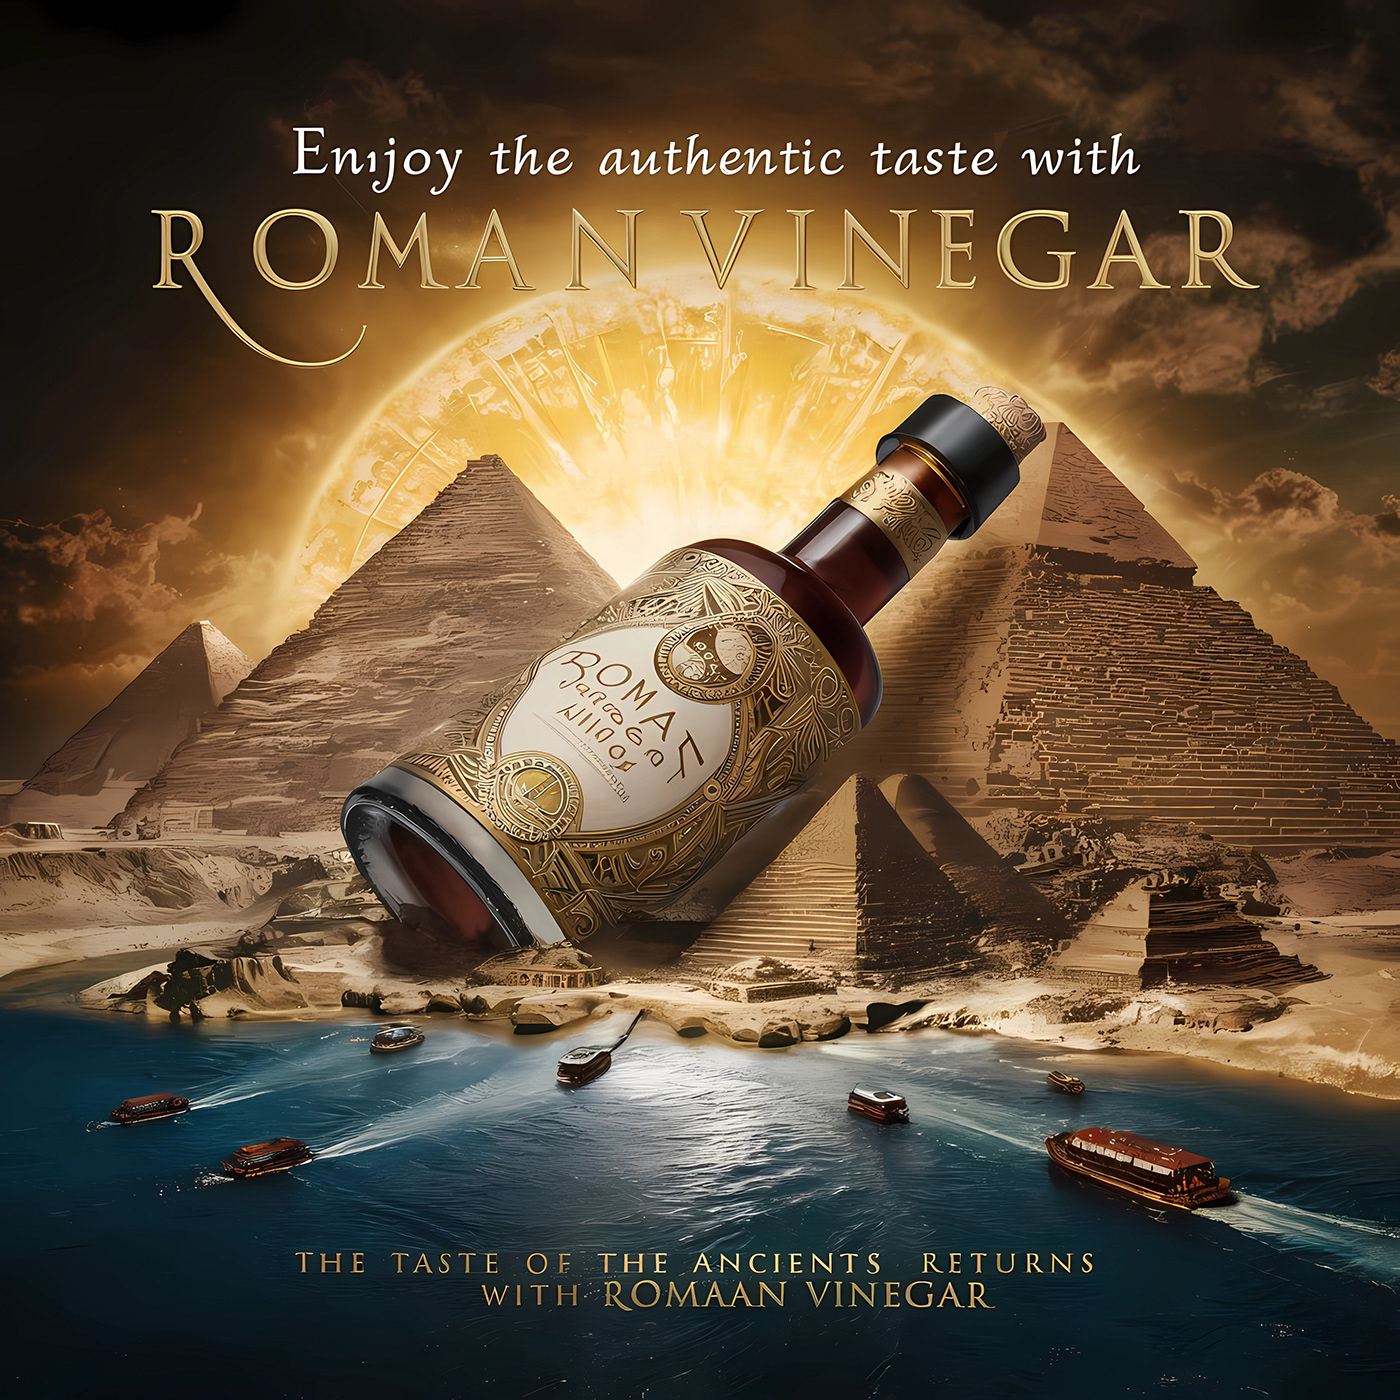 poster egyptian roman vinegar bottle pyramids egypt social media Graphic Designer Egyptian Roman vinegar